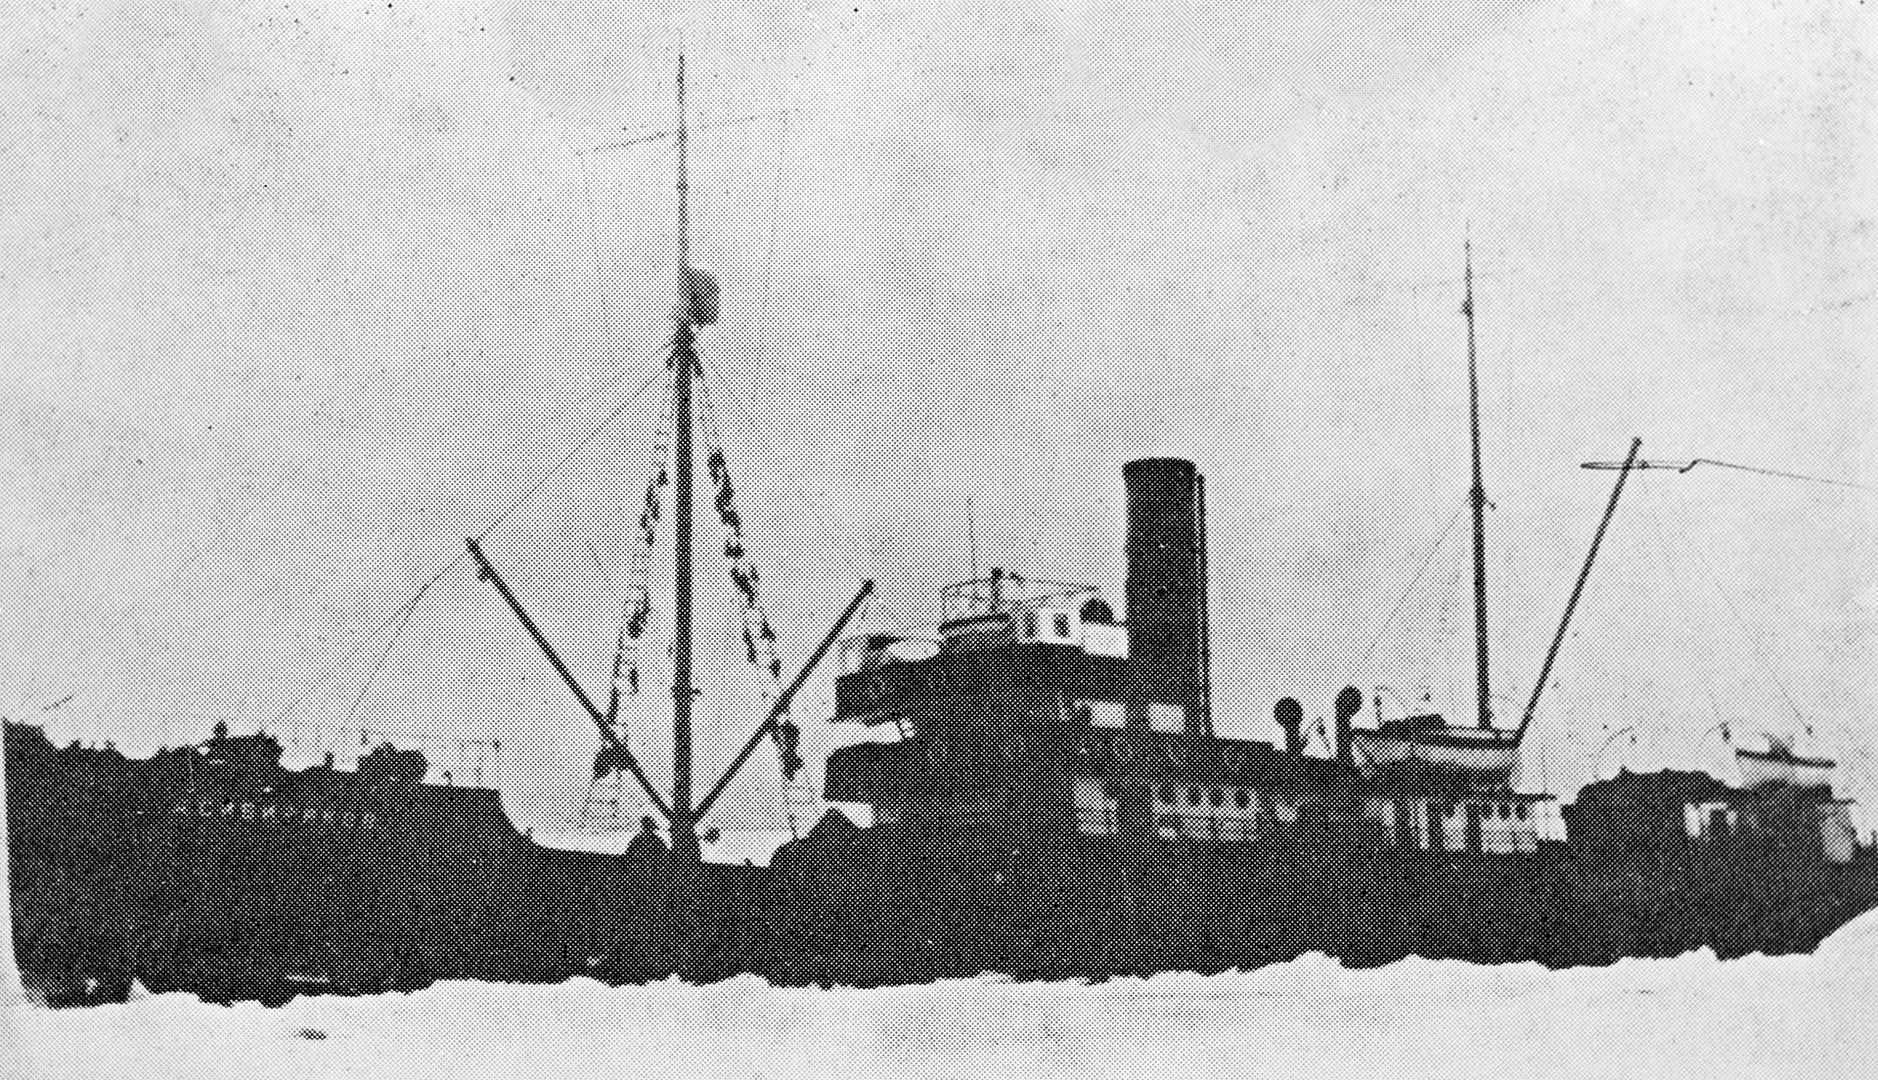 El rompehielos Alexánder Sibiriakov, nombrado en honor del industrial que exploró Siberia, resultó hundido el 25 de agosto de 1942 tras ser cañoneado por el crucero pesado de la marina alemana Almirante Scheer en las proximidades de la Isla Beluja, en el Mar de Kara.